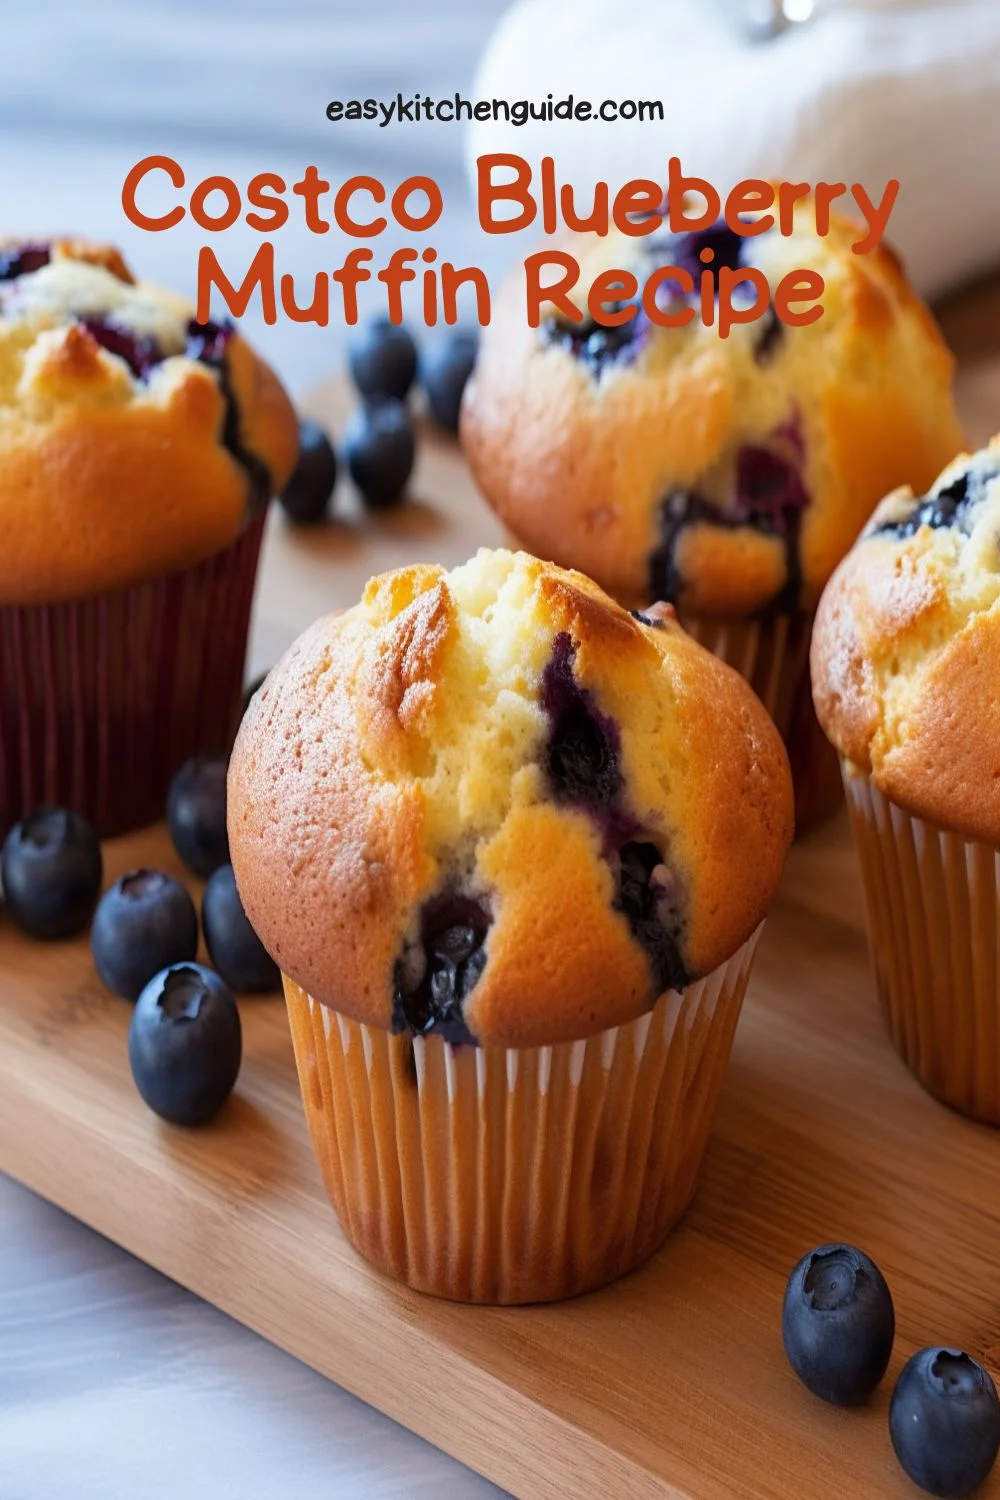 Costco Blueberry Muffin Recipe